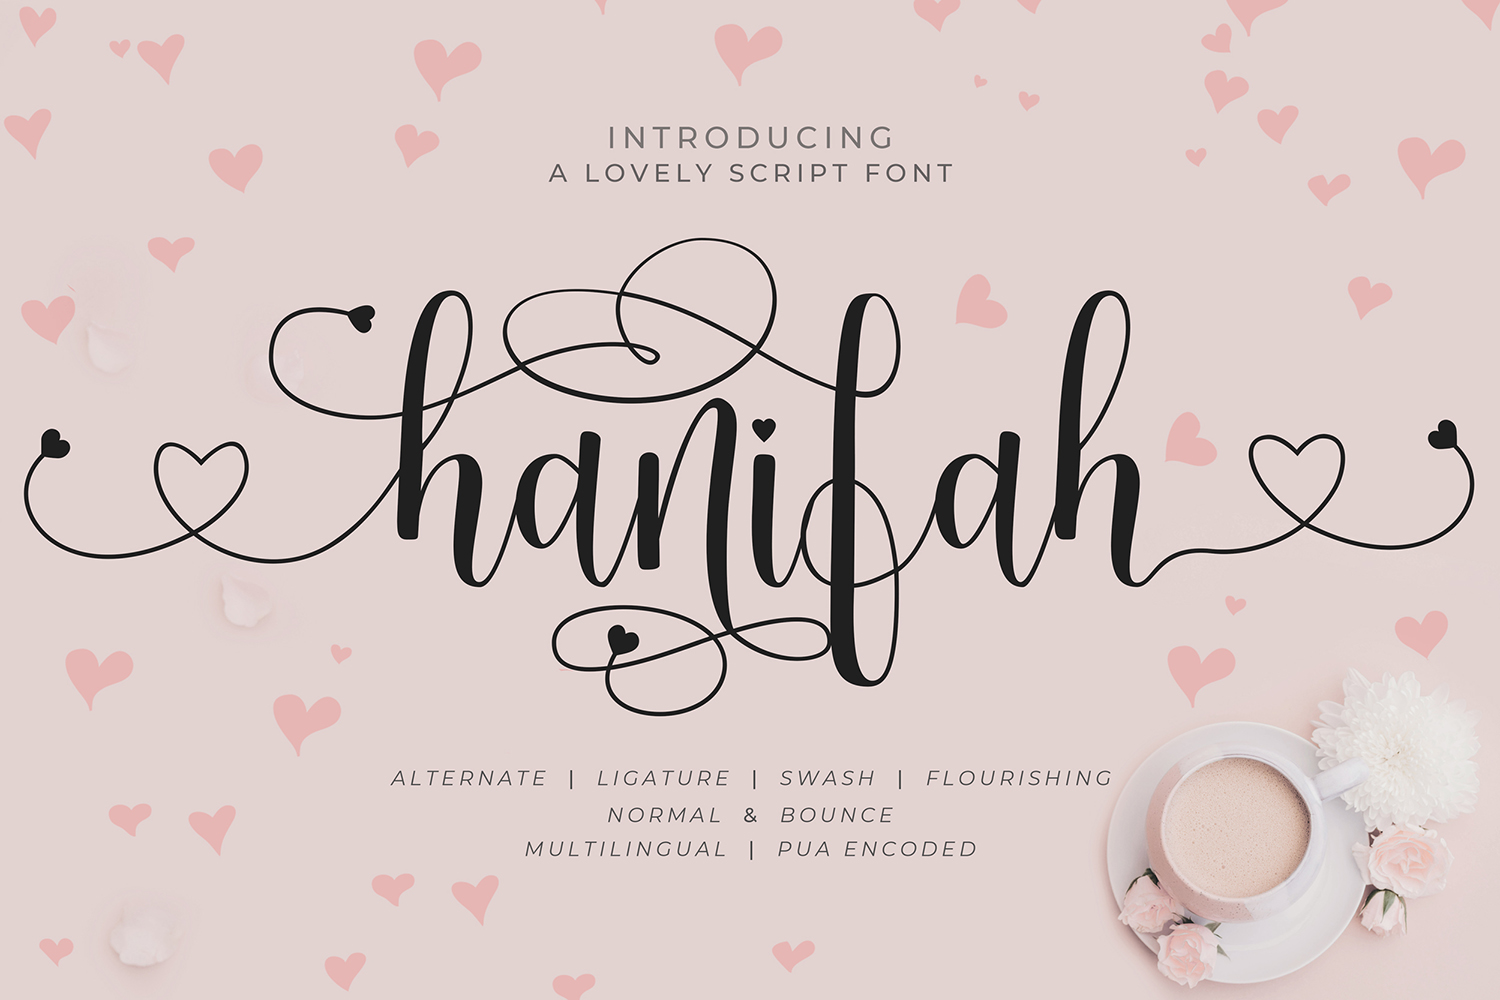 Hanifah Free Font